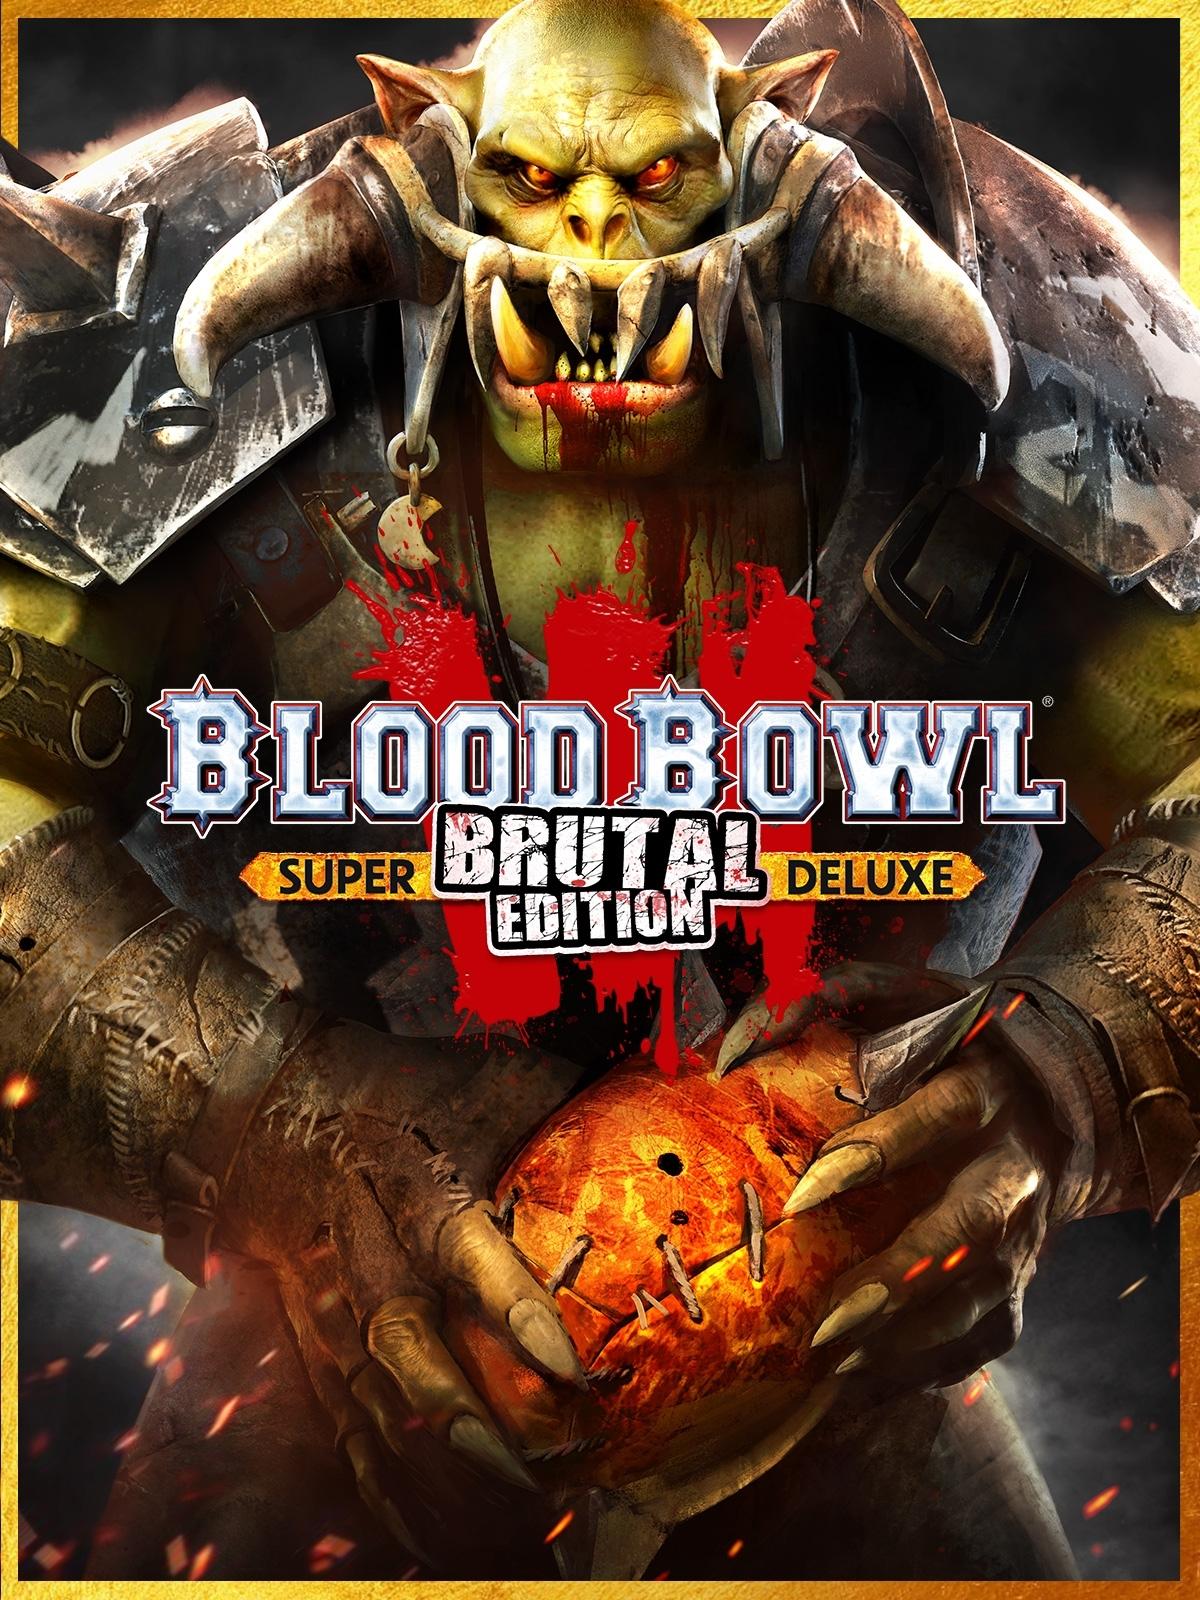 Blood Bowl 3 - Brutal Edition Pre-order | LATAM (fedf1a44-71e1-4ab9-8008-ffd198ad5fea)